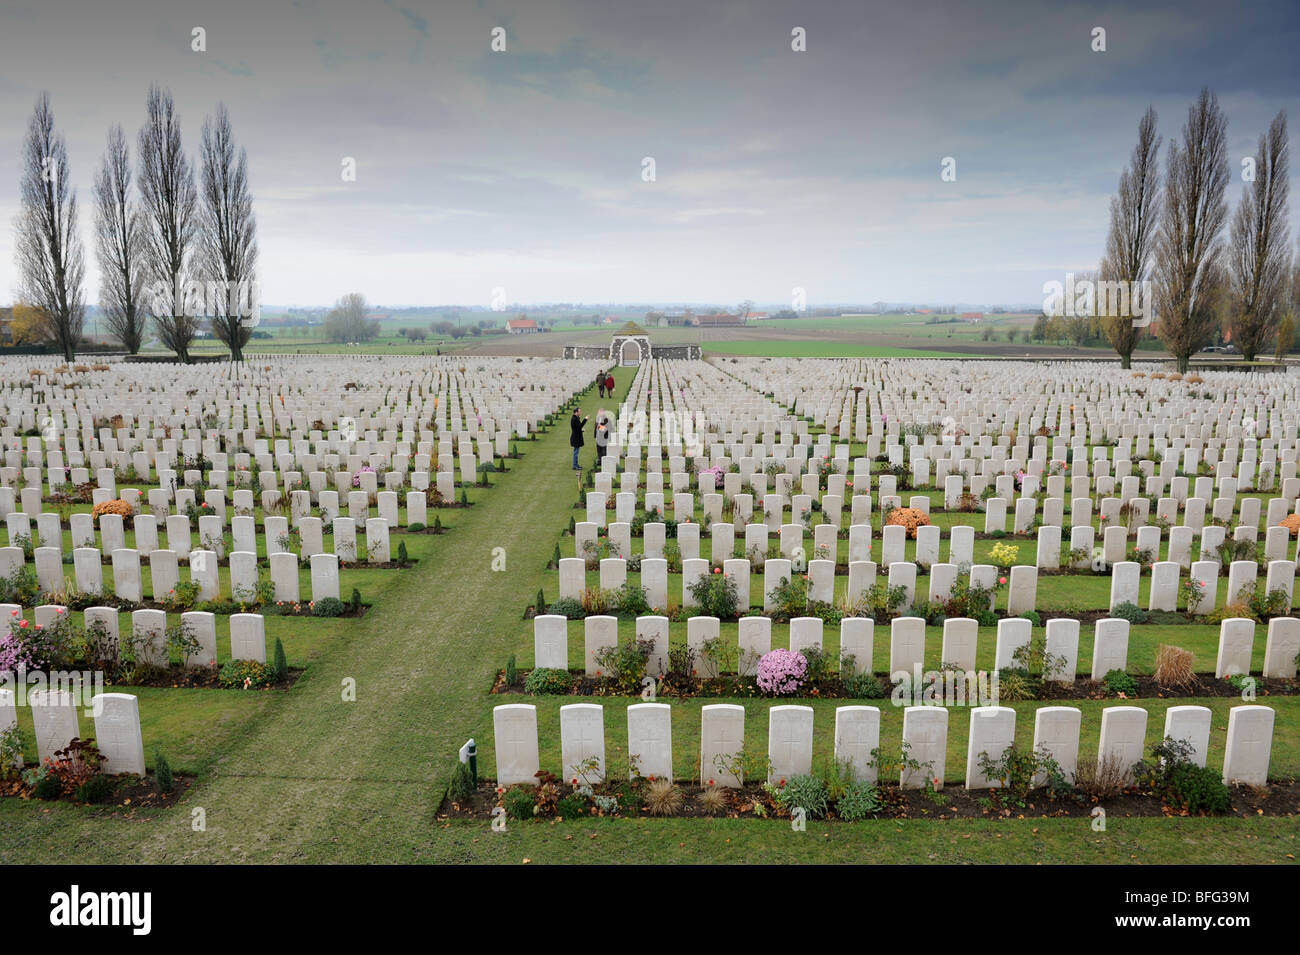 Tombes de Soldats de la Première Guerre mondiale au cimetière de Tyne Cot Passchendale Ypres Belgique Banque D'Images